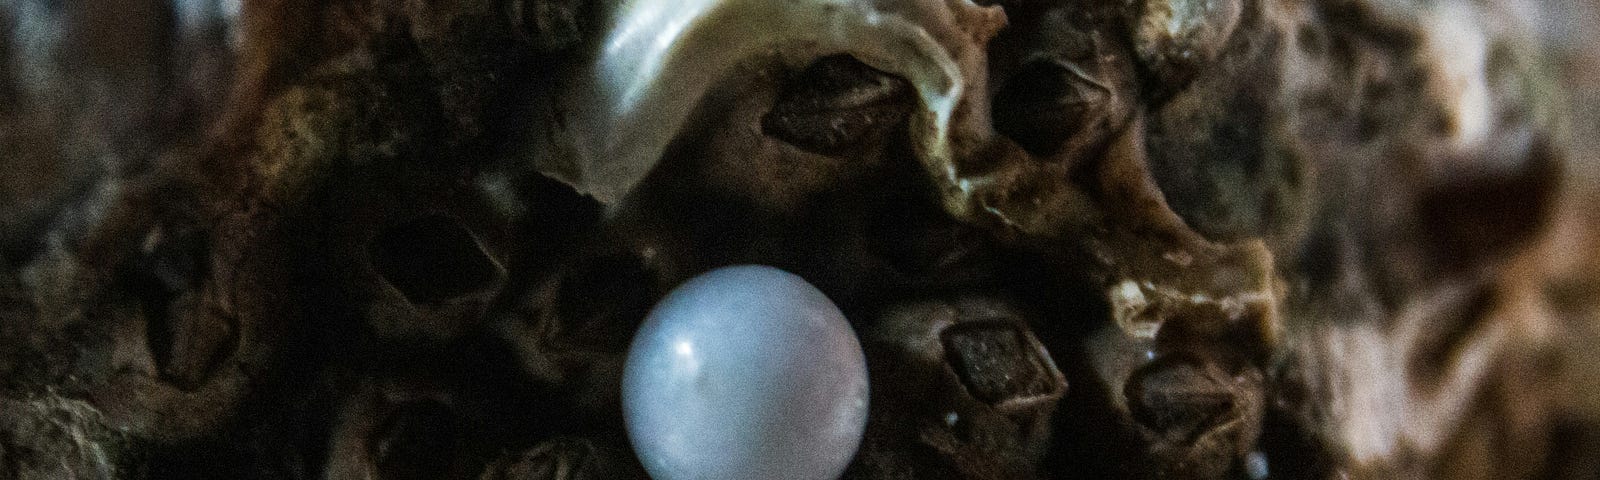 A white pearl